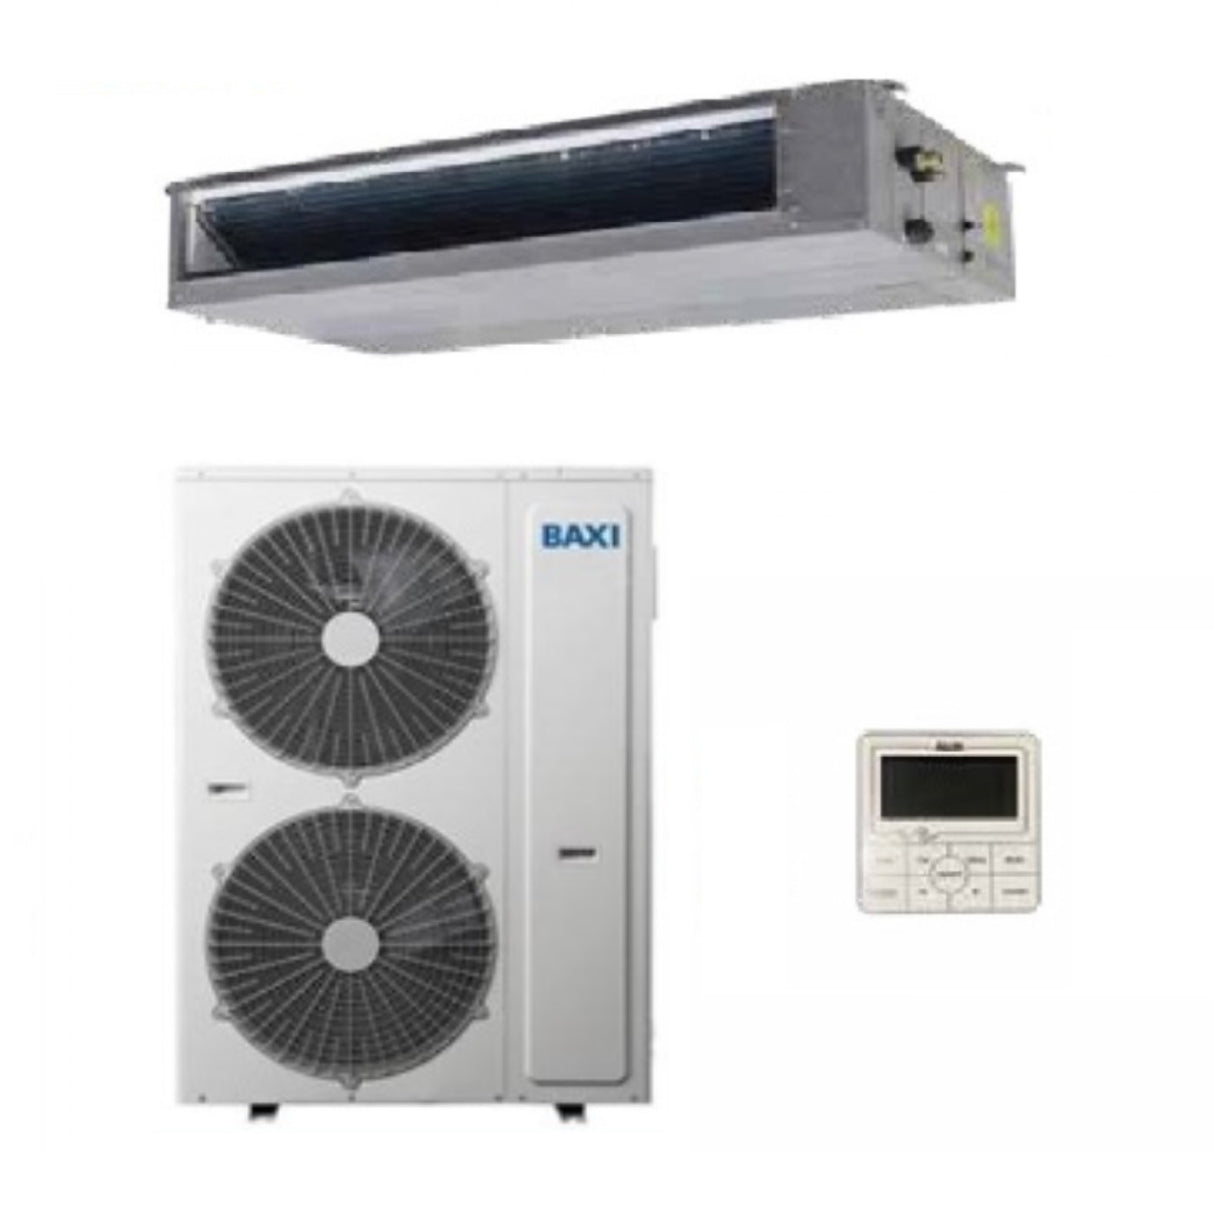 immagine-1-baxi-climatizzatore-condizionatore-baxi-inverter-luna-clima-canalizzabile-canalizzato-r-32-60000-btu-rzgnd160